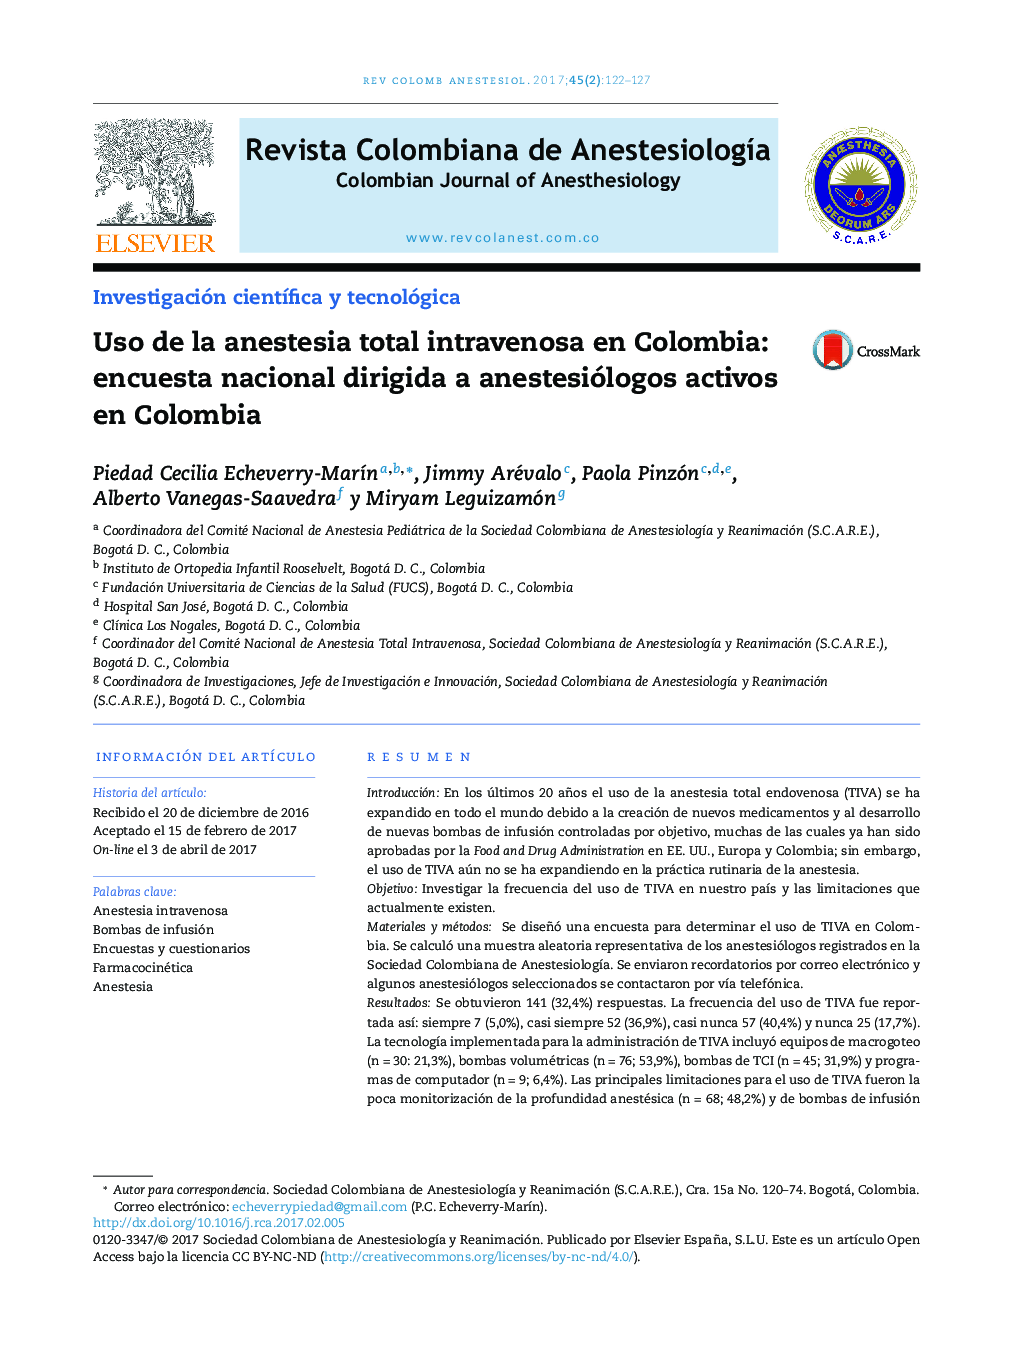 استفاده از بیهوشی کامل داخل وریدی در کلمبیا: نظرسنجی ملی به بیهوشی فعال در کلمبیا 